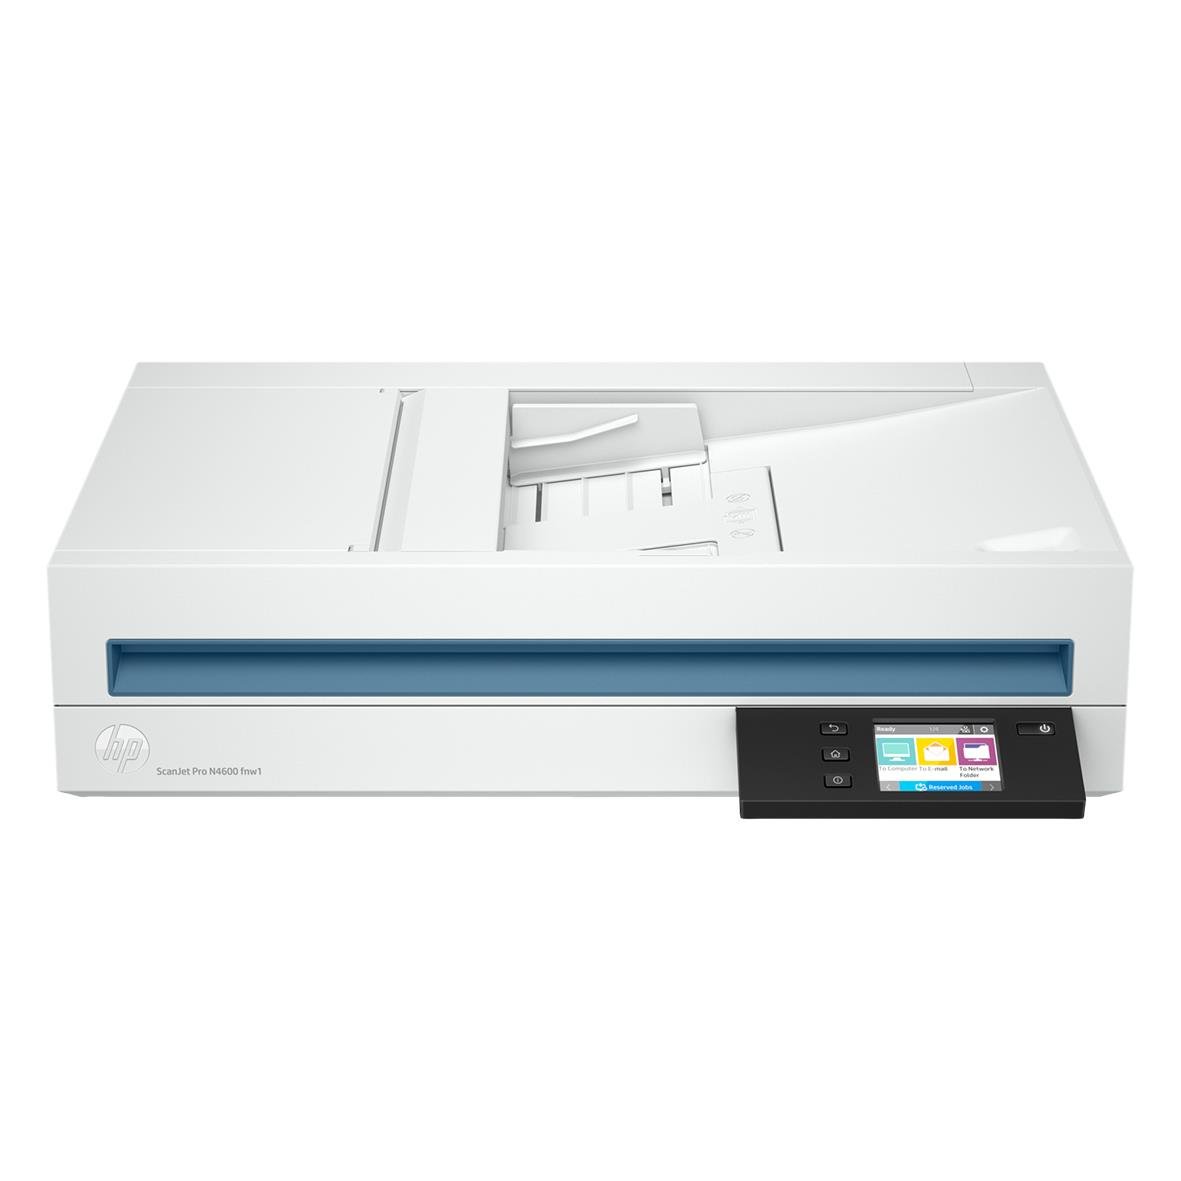 Scanner HP ScanJet Pro N4600 fnw1 35190324_1